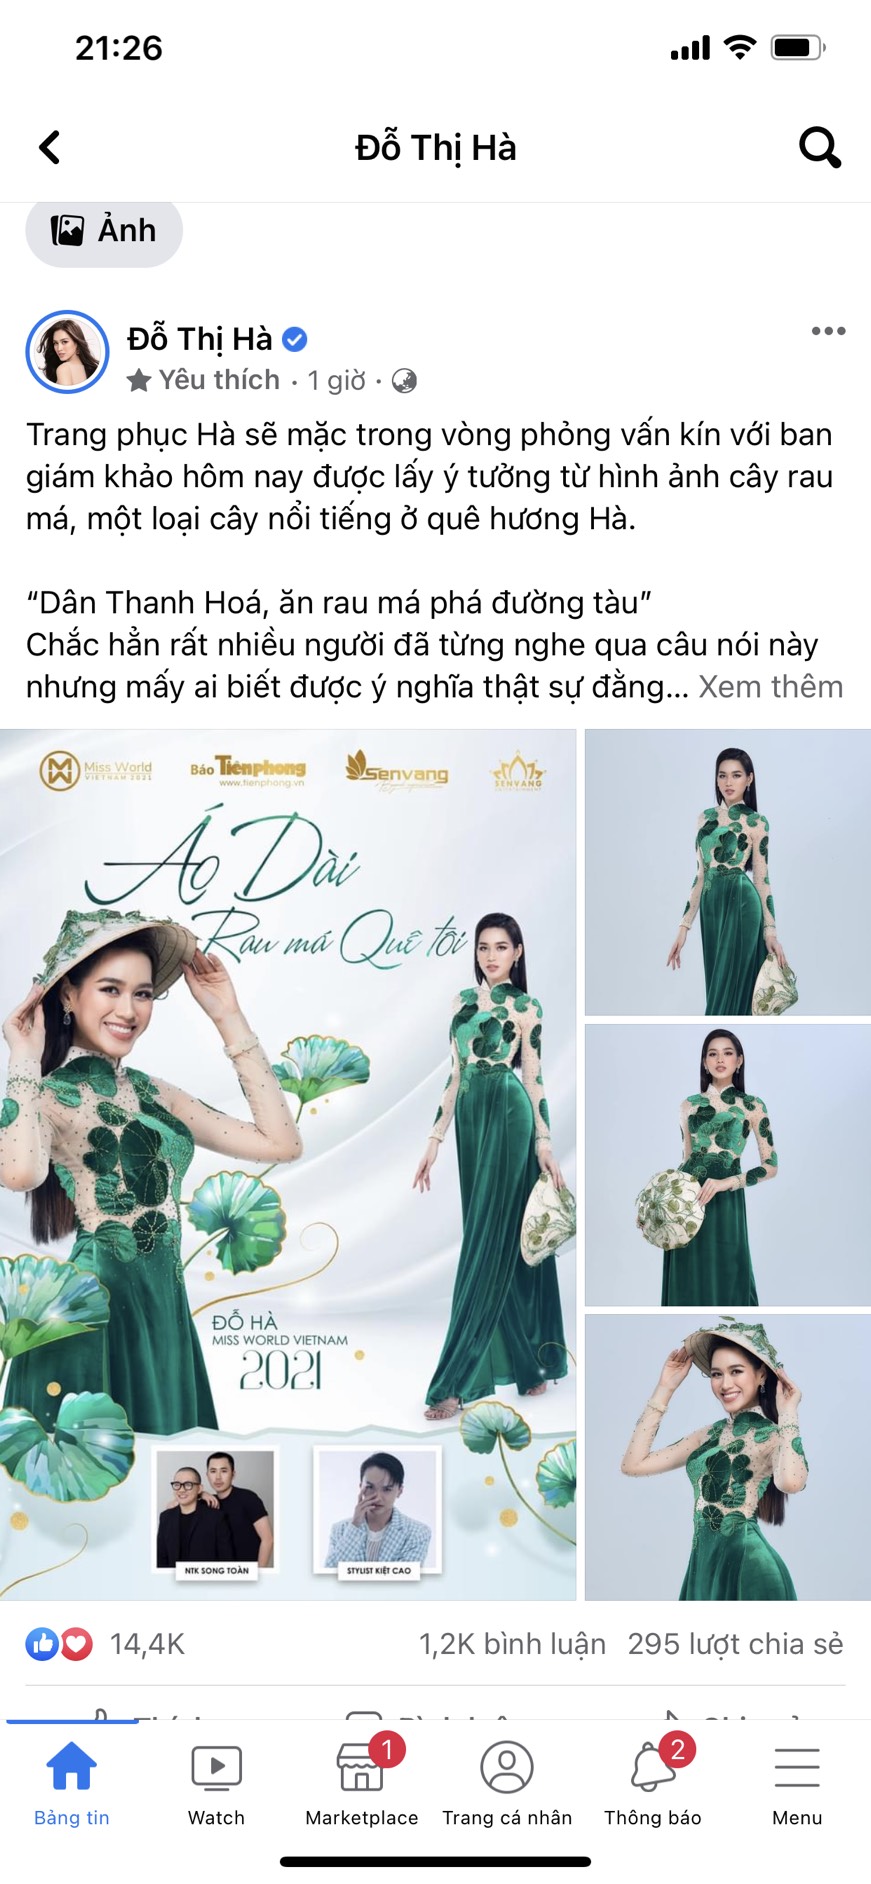 Bài viết mới nhất của Hoa hậu Đỗ Thị Hà trên trang cá nhân, thu hút sự chú ý của dư luận